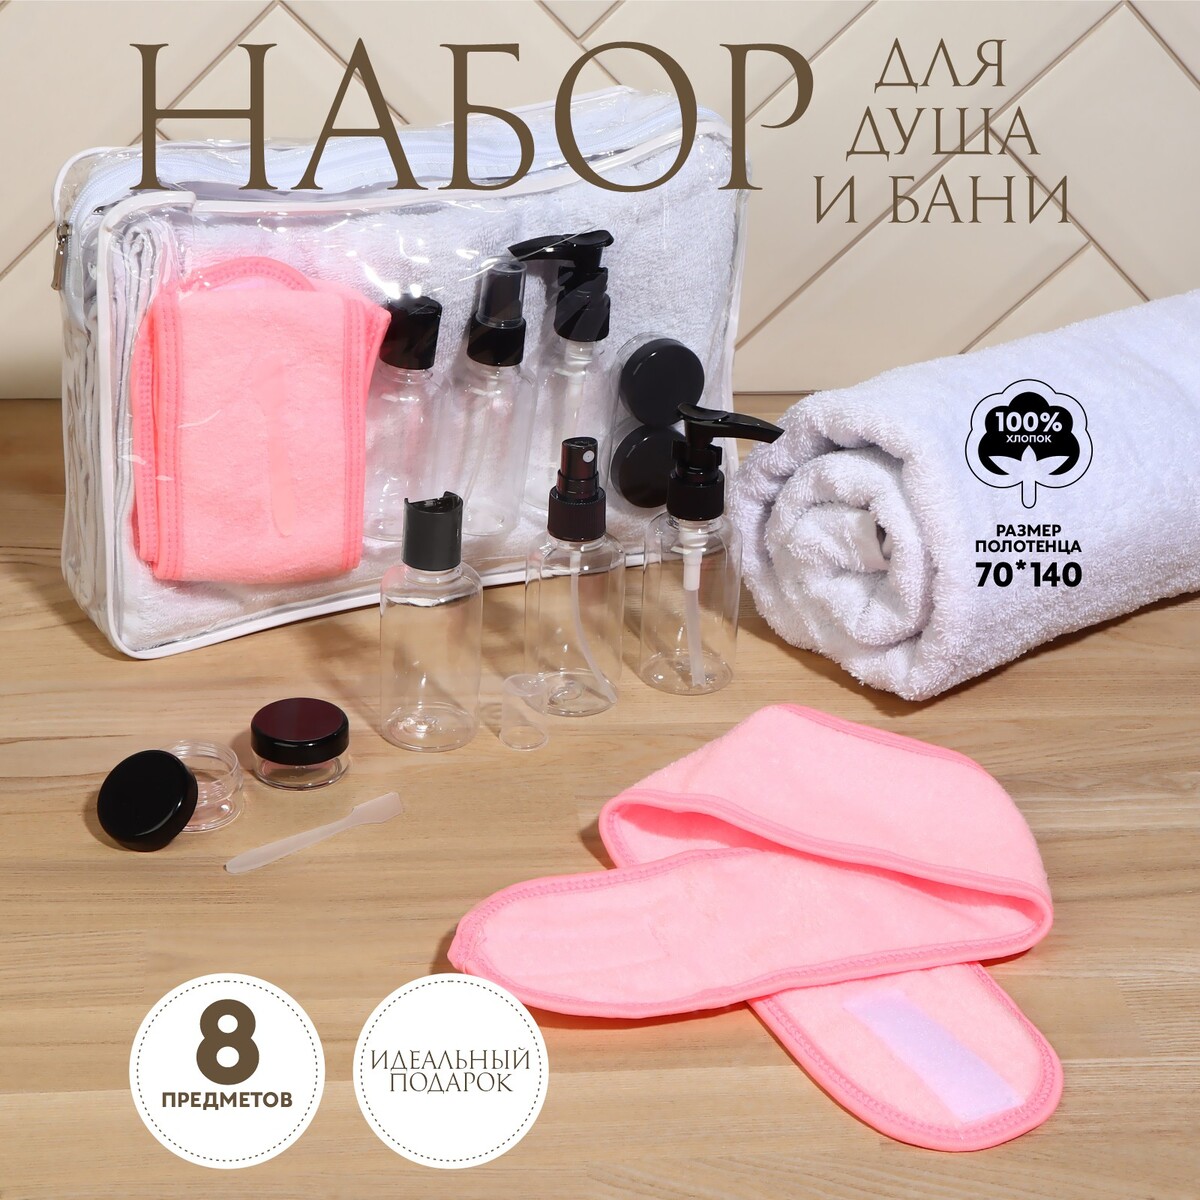 Набор банный, в косметичке, 8 предметов (полотенце 70 × 140 см, бутылочки 3 шт, баночки 2 шт, повязка на голову, лопатка) , цвет белый/розовый полотенце для набор махровых полотенец